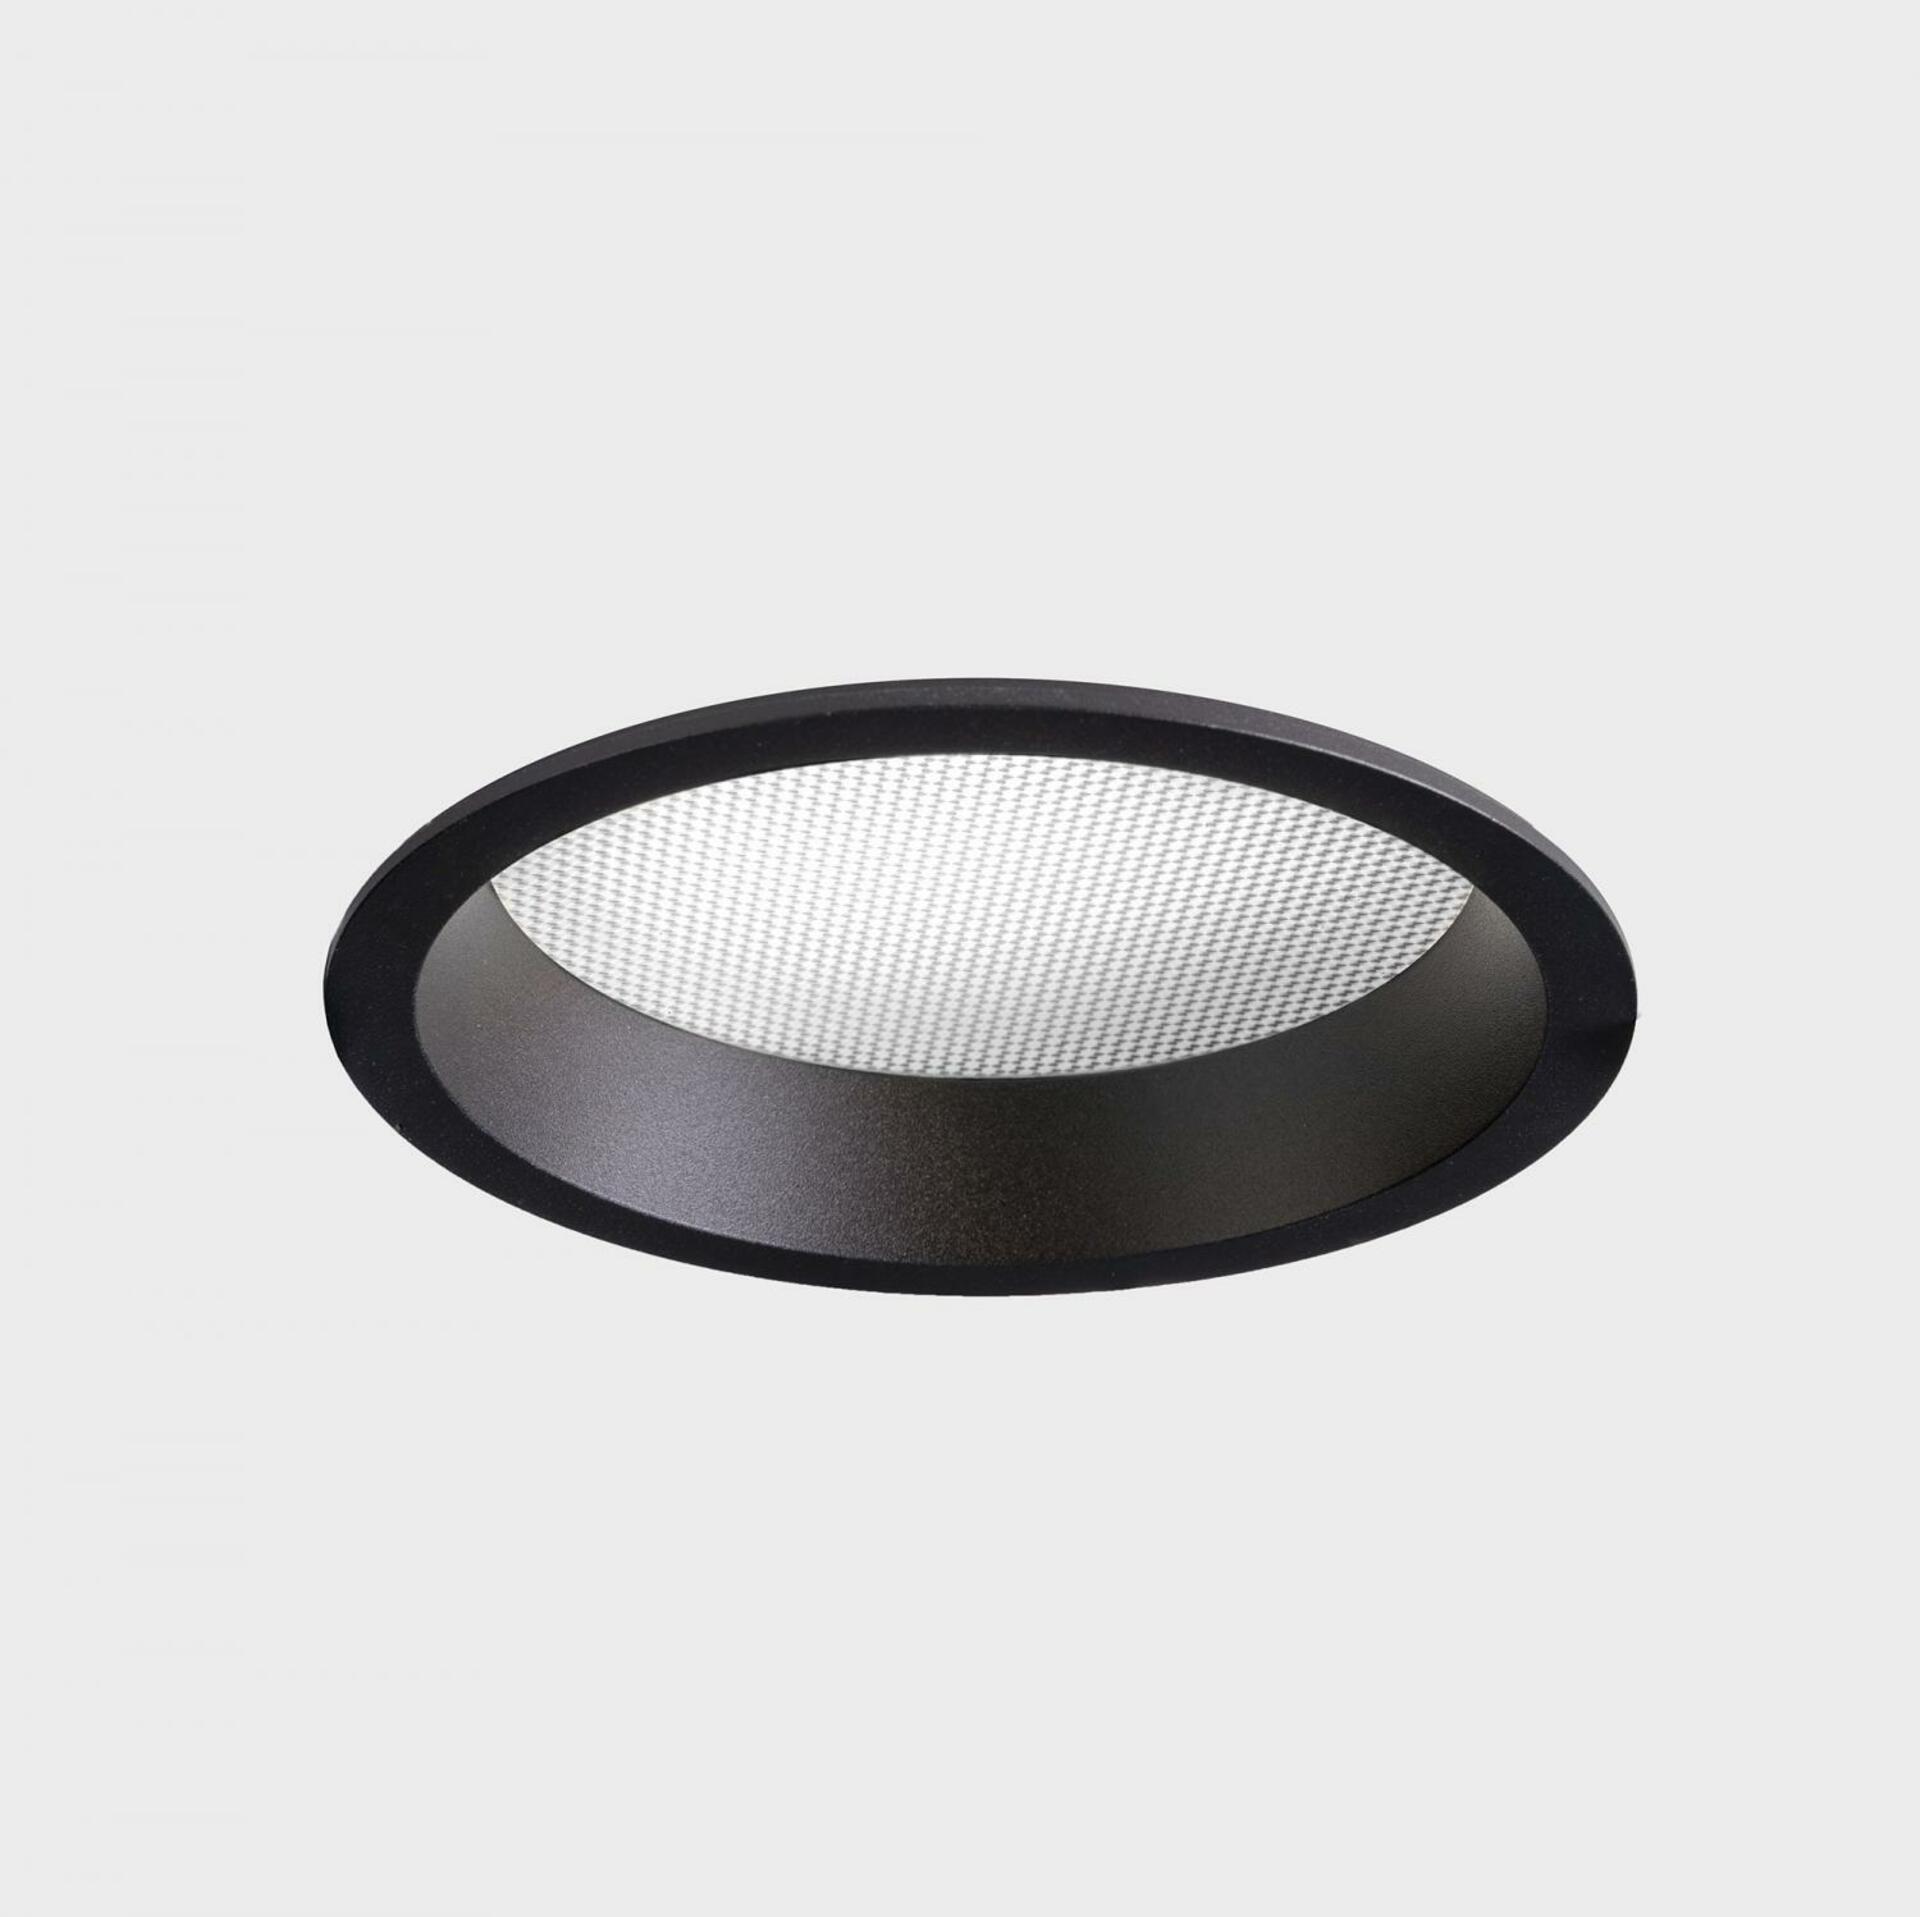 KOHL LIGHTING KOHL-Lighting LIM zapuštěné svítidlo s rámečkem pr. 136 mm černá 12 W CRI 80 4000K Non-Dimm